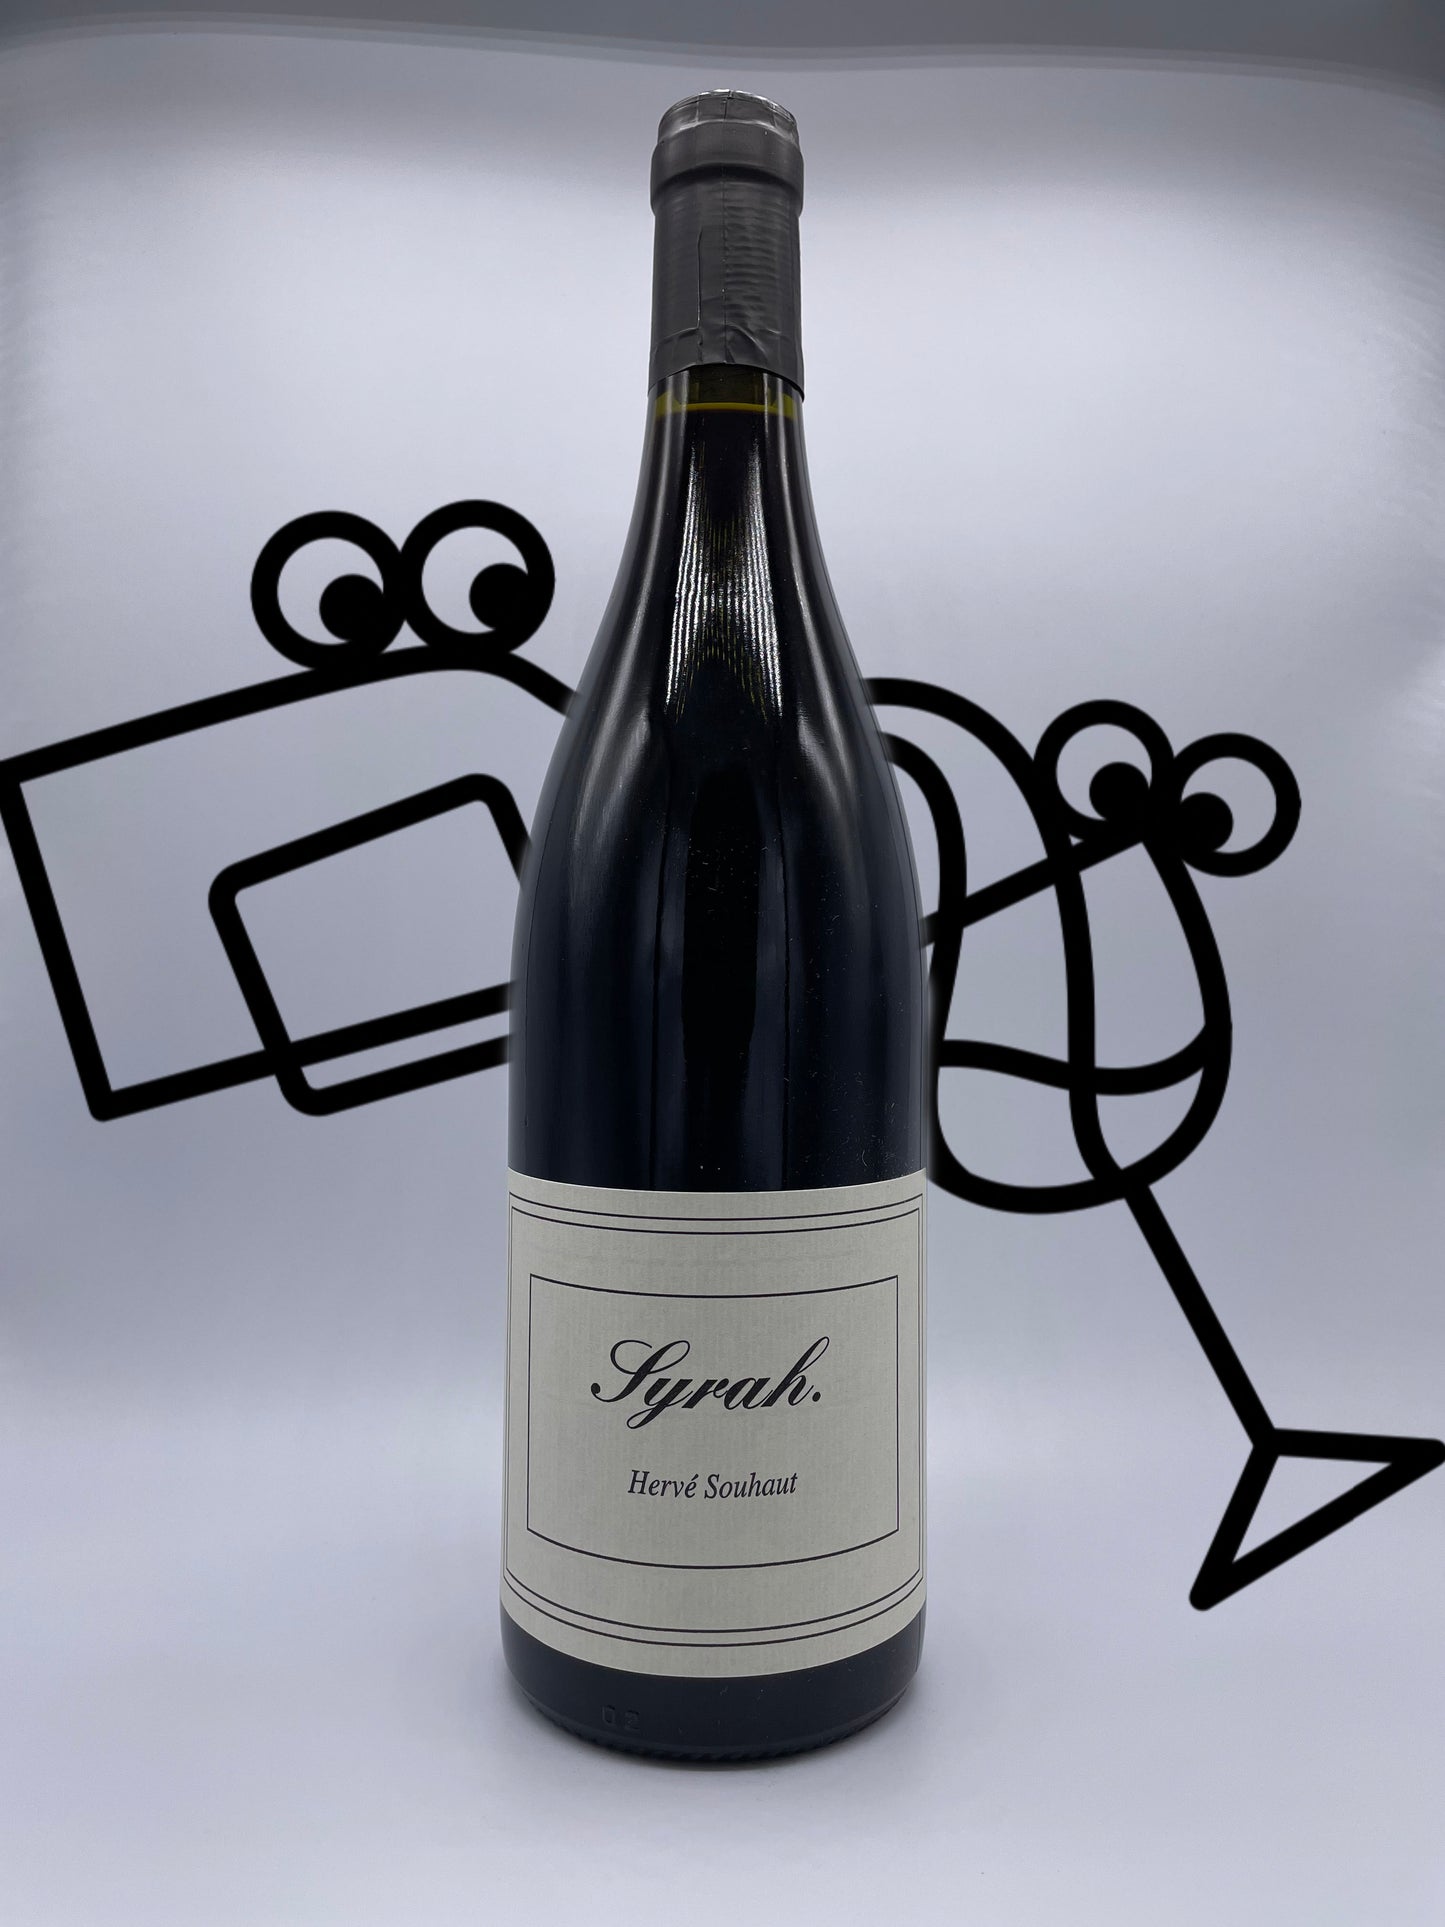 Souhaut 'Syrah' Ardeche, France Williston Park Wines